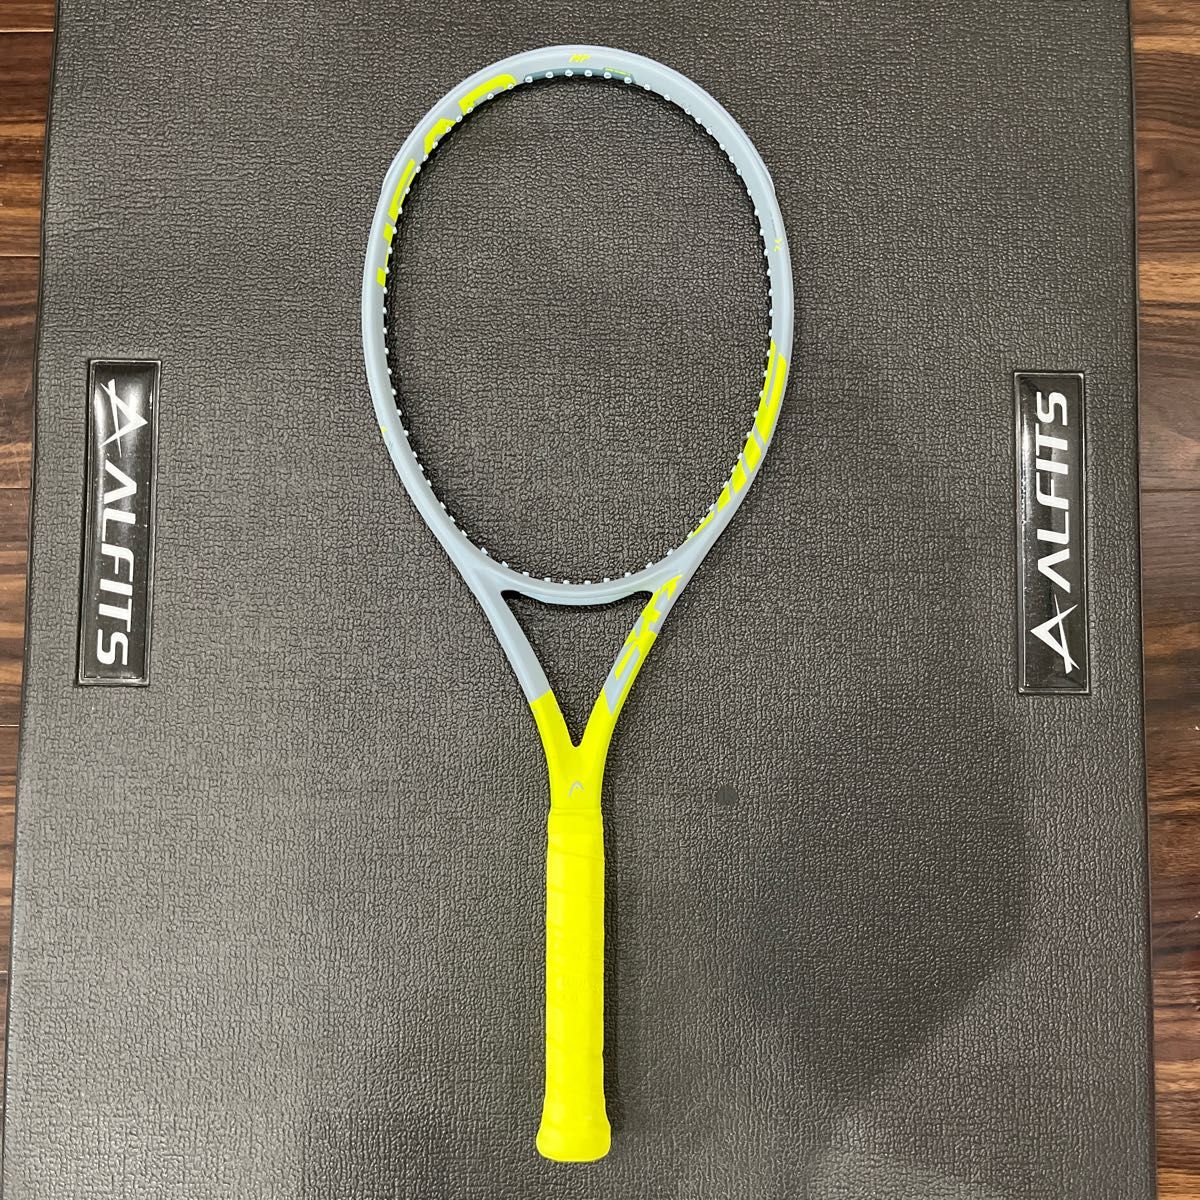 ヘッド 2020 グラフィン360+ エクストリーム MP (300g) 硬式 テニス